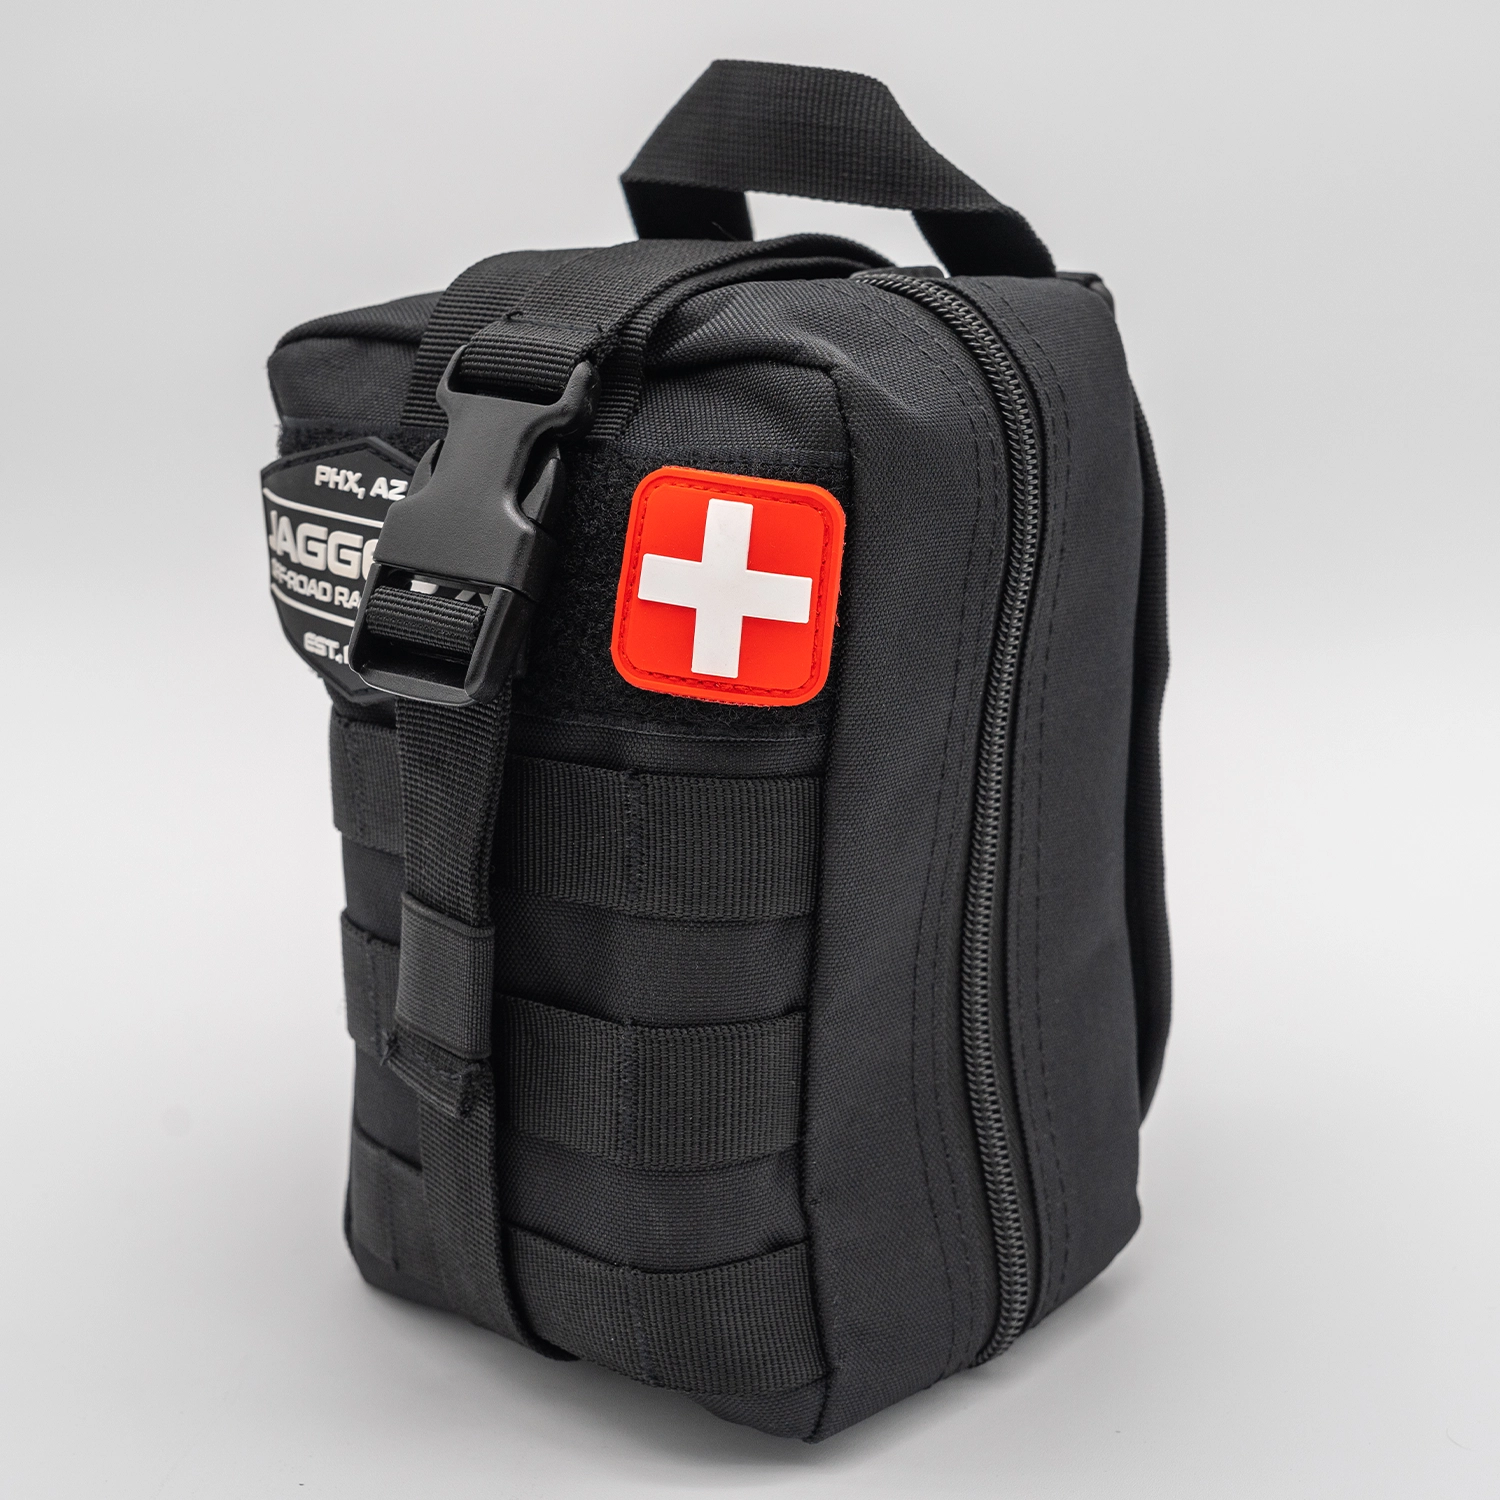 jagged x offroad advanced first aid kit 2